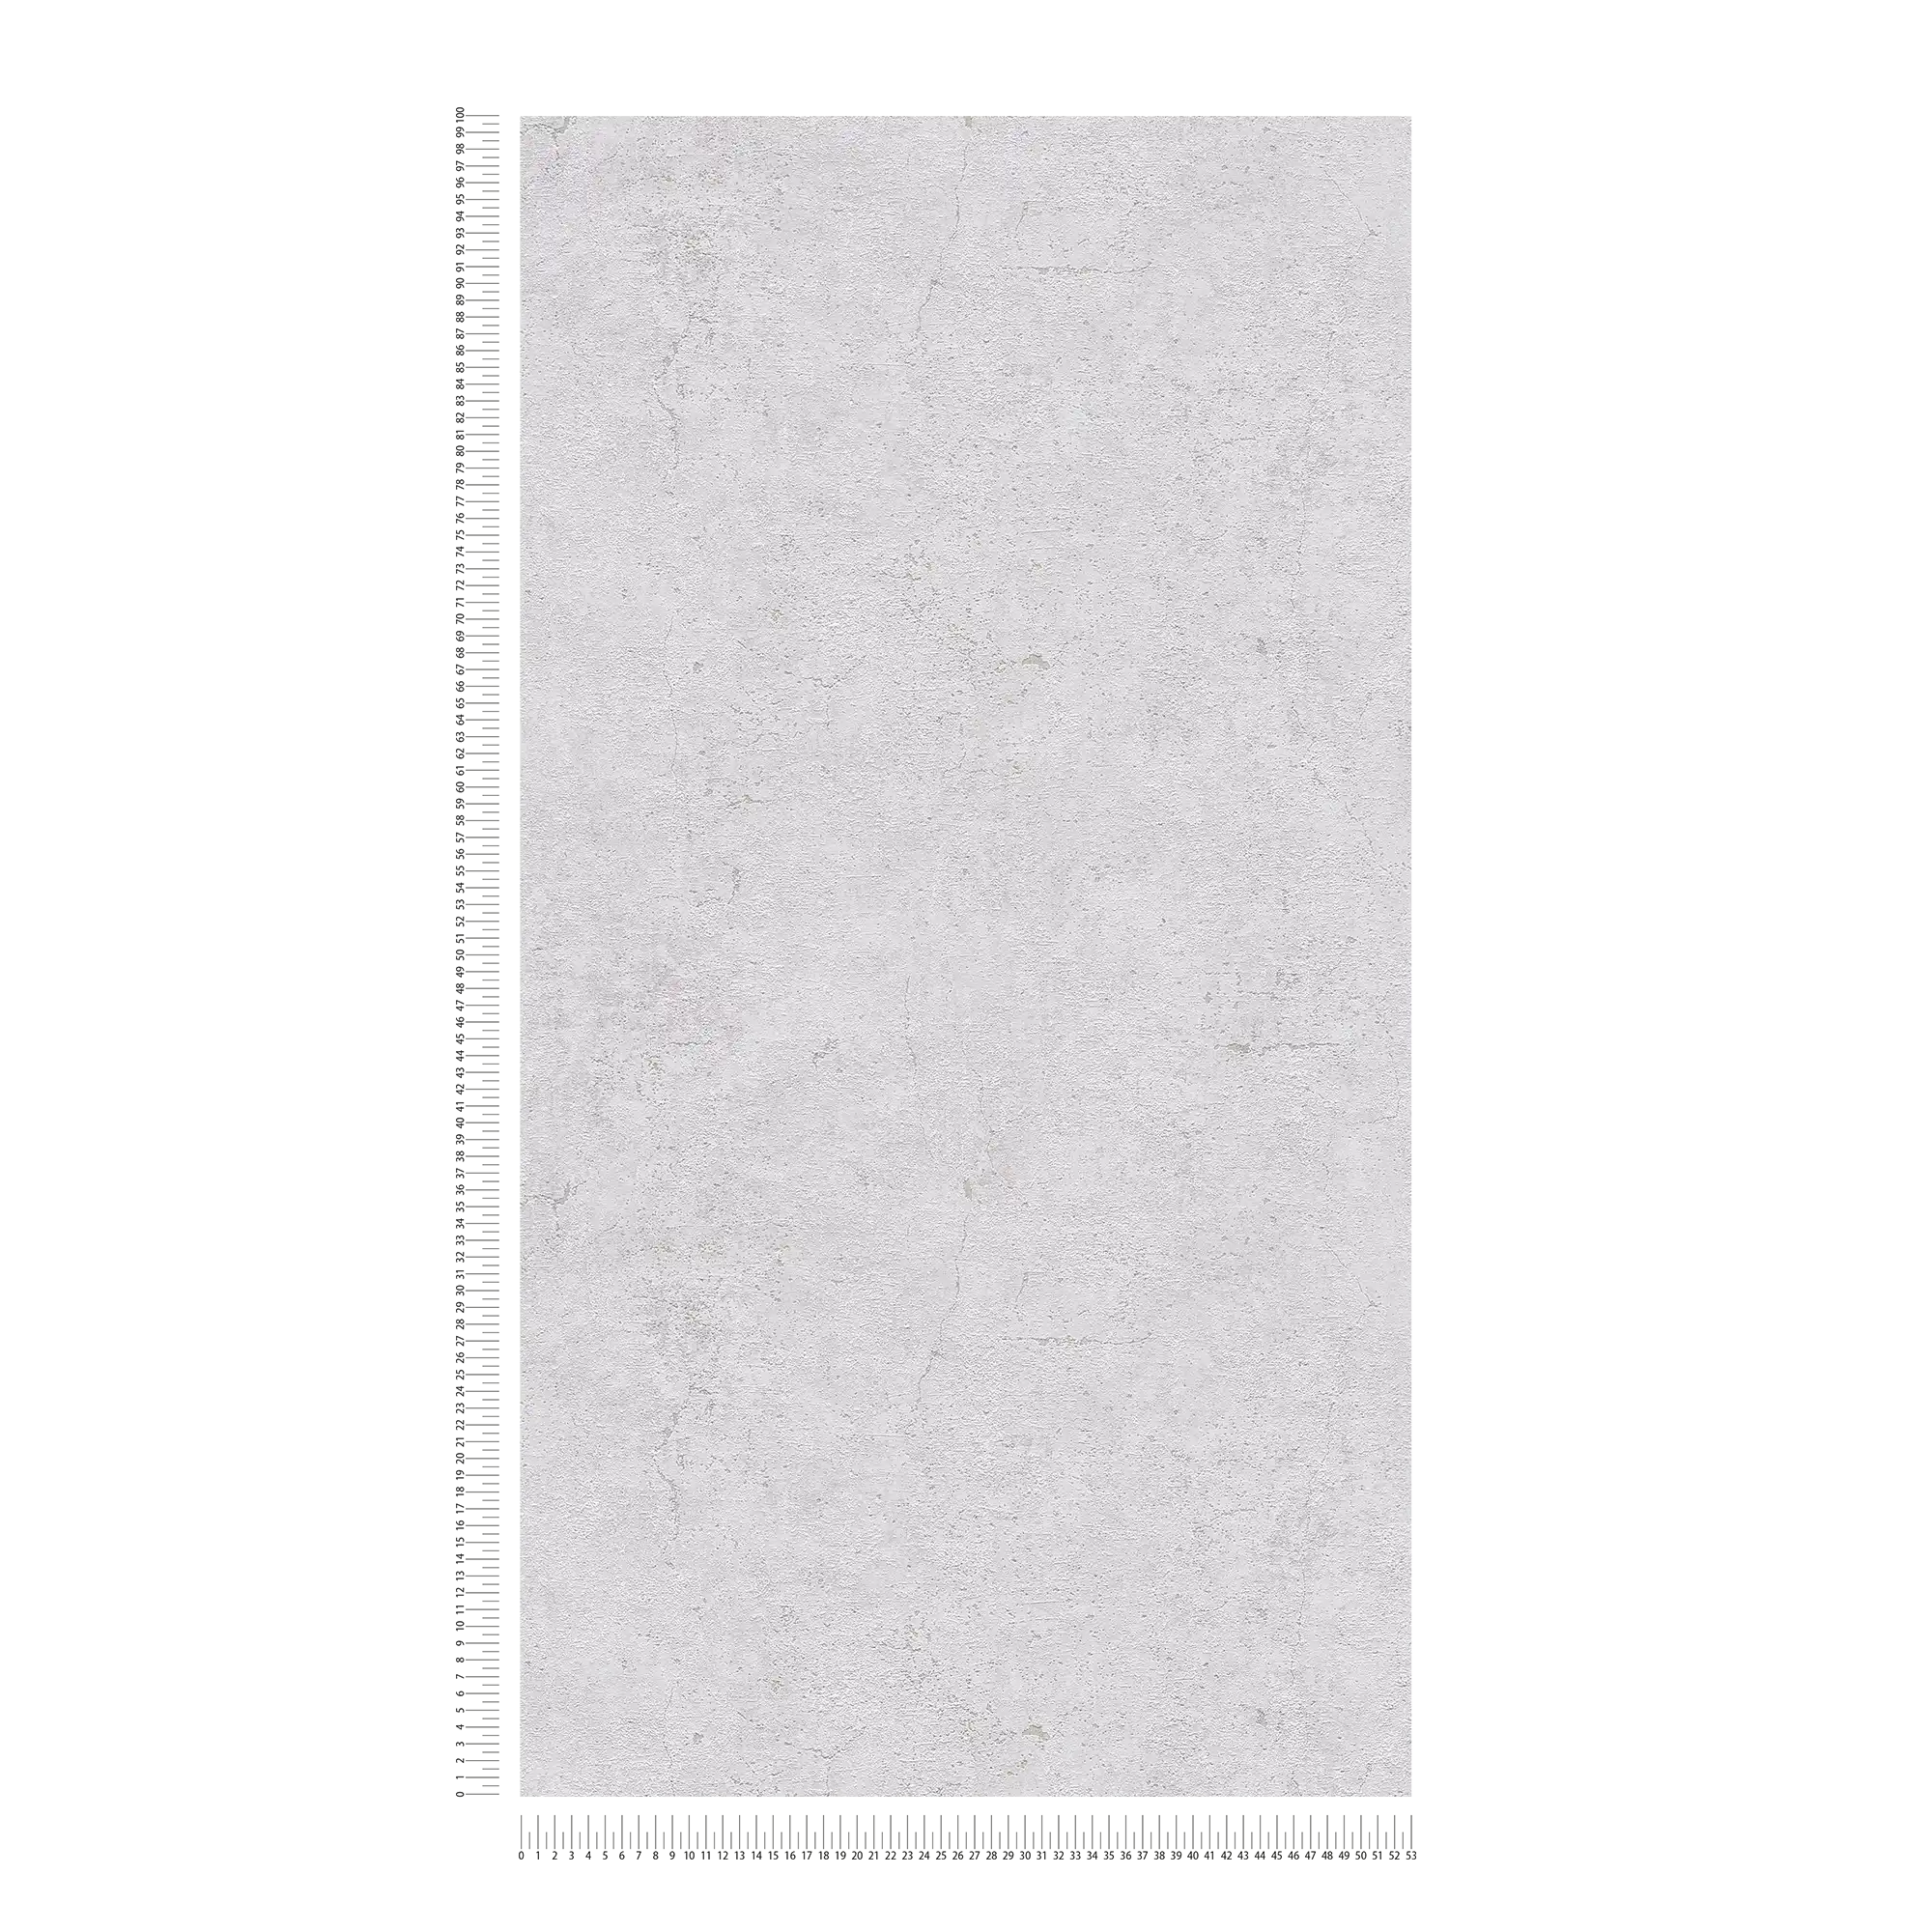             papel pintado aspecto rústico en estilo industrial - gris
        